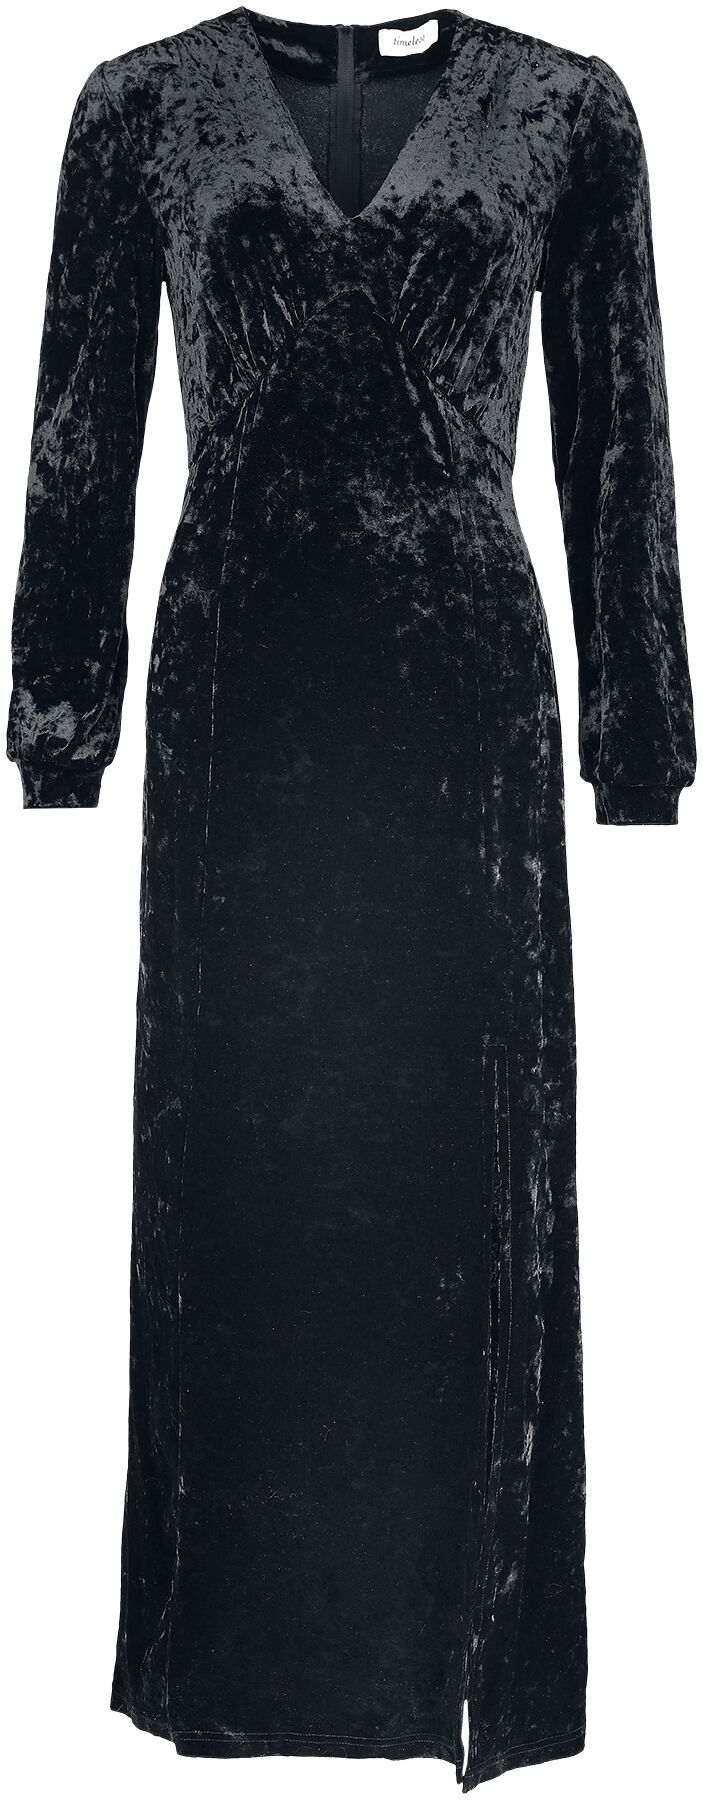 Timeless London Miley Black Dress Langes Kleid schwarz in L